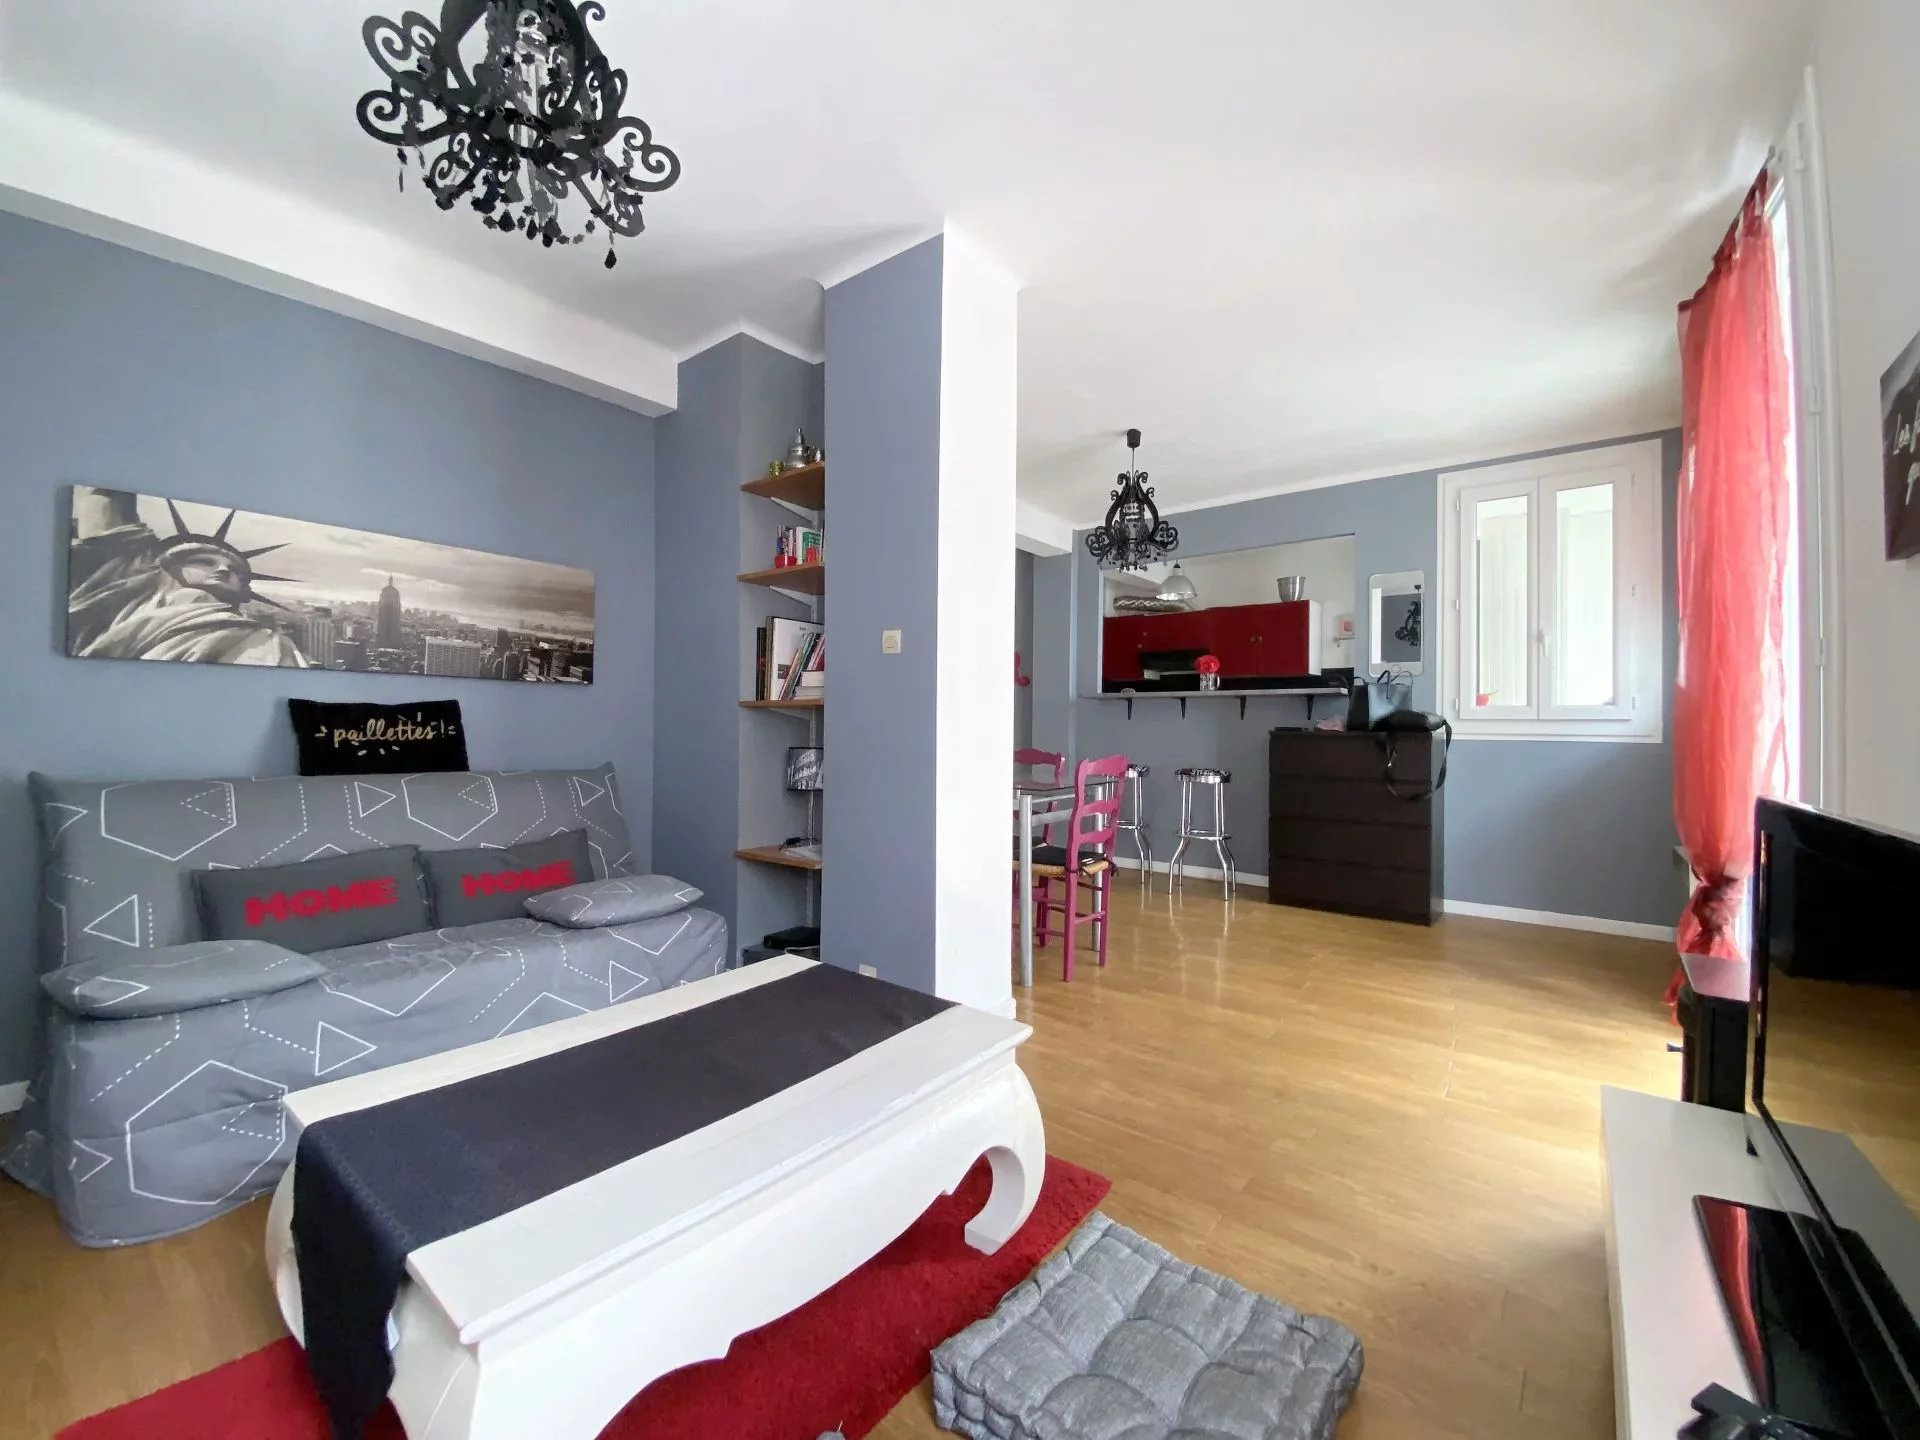 Appartement Appartement Lézignan-Corbières 530€ Grimois Immobilier